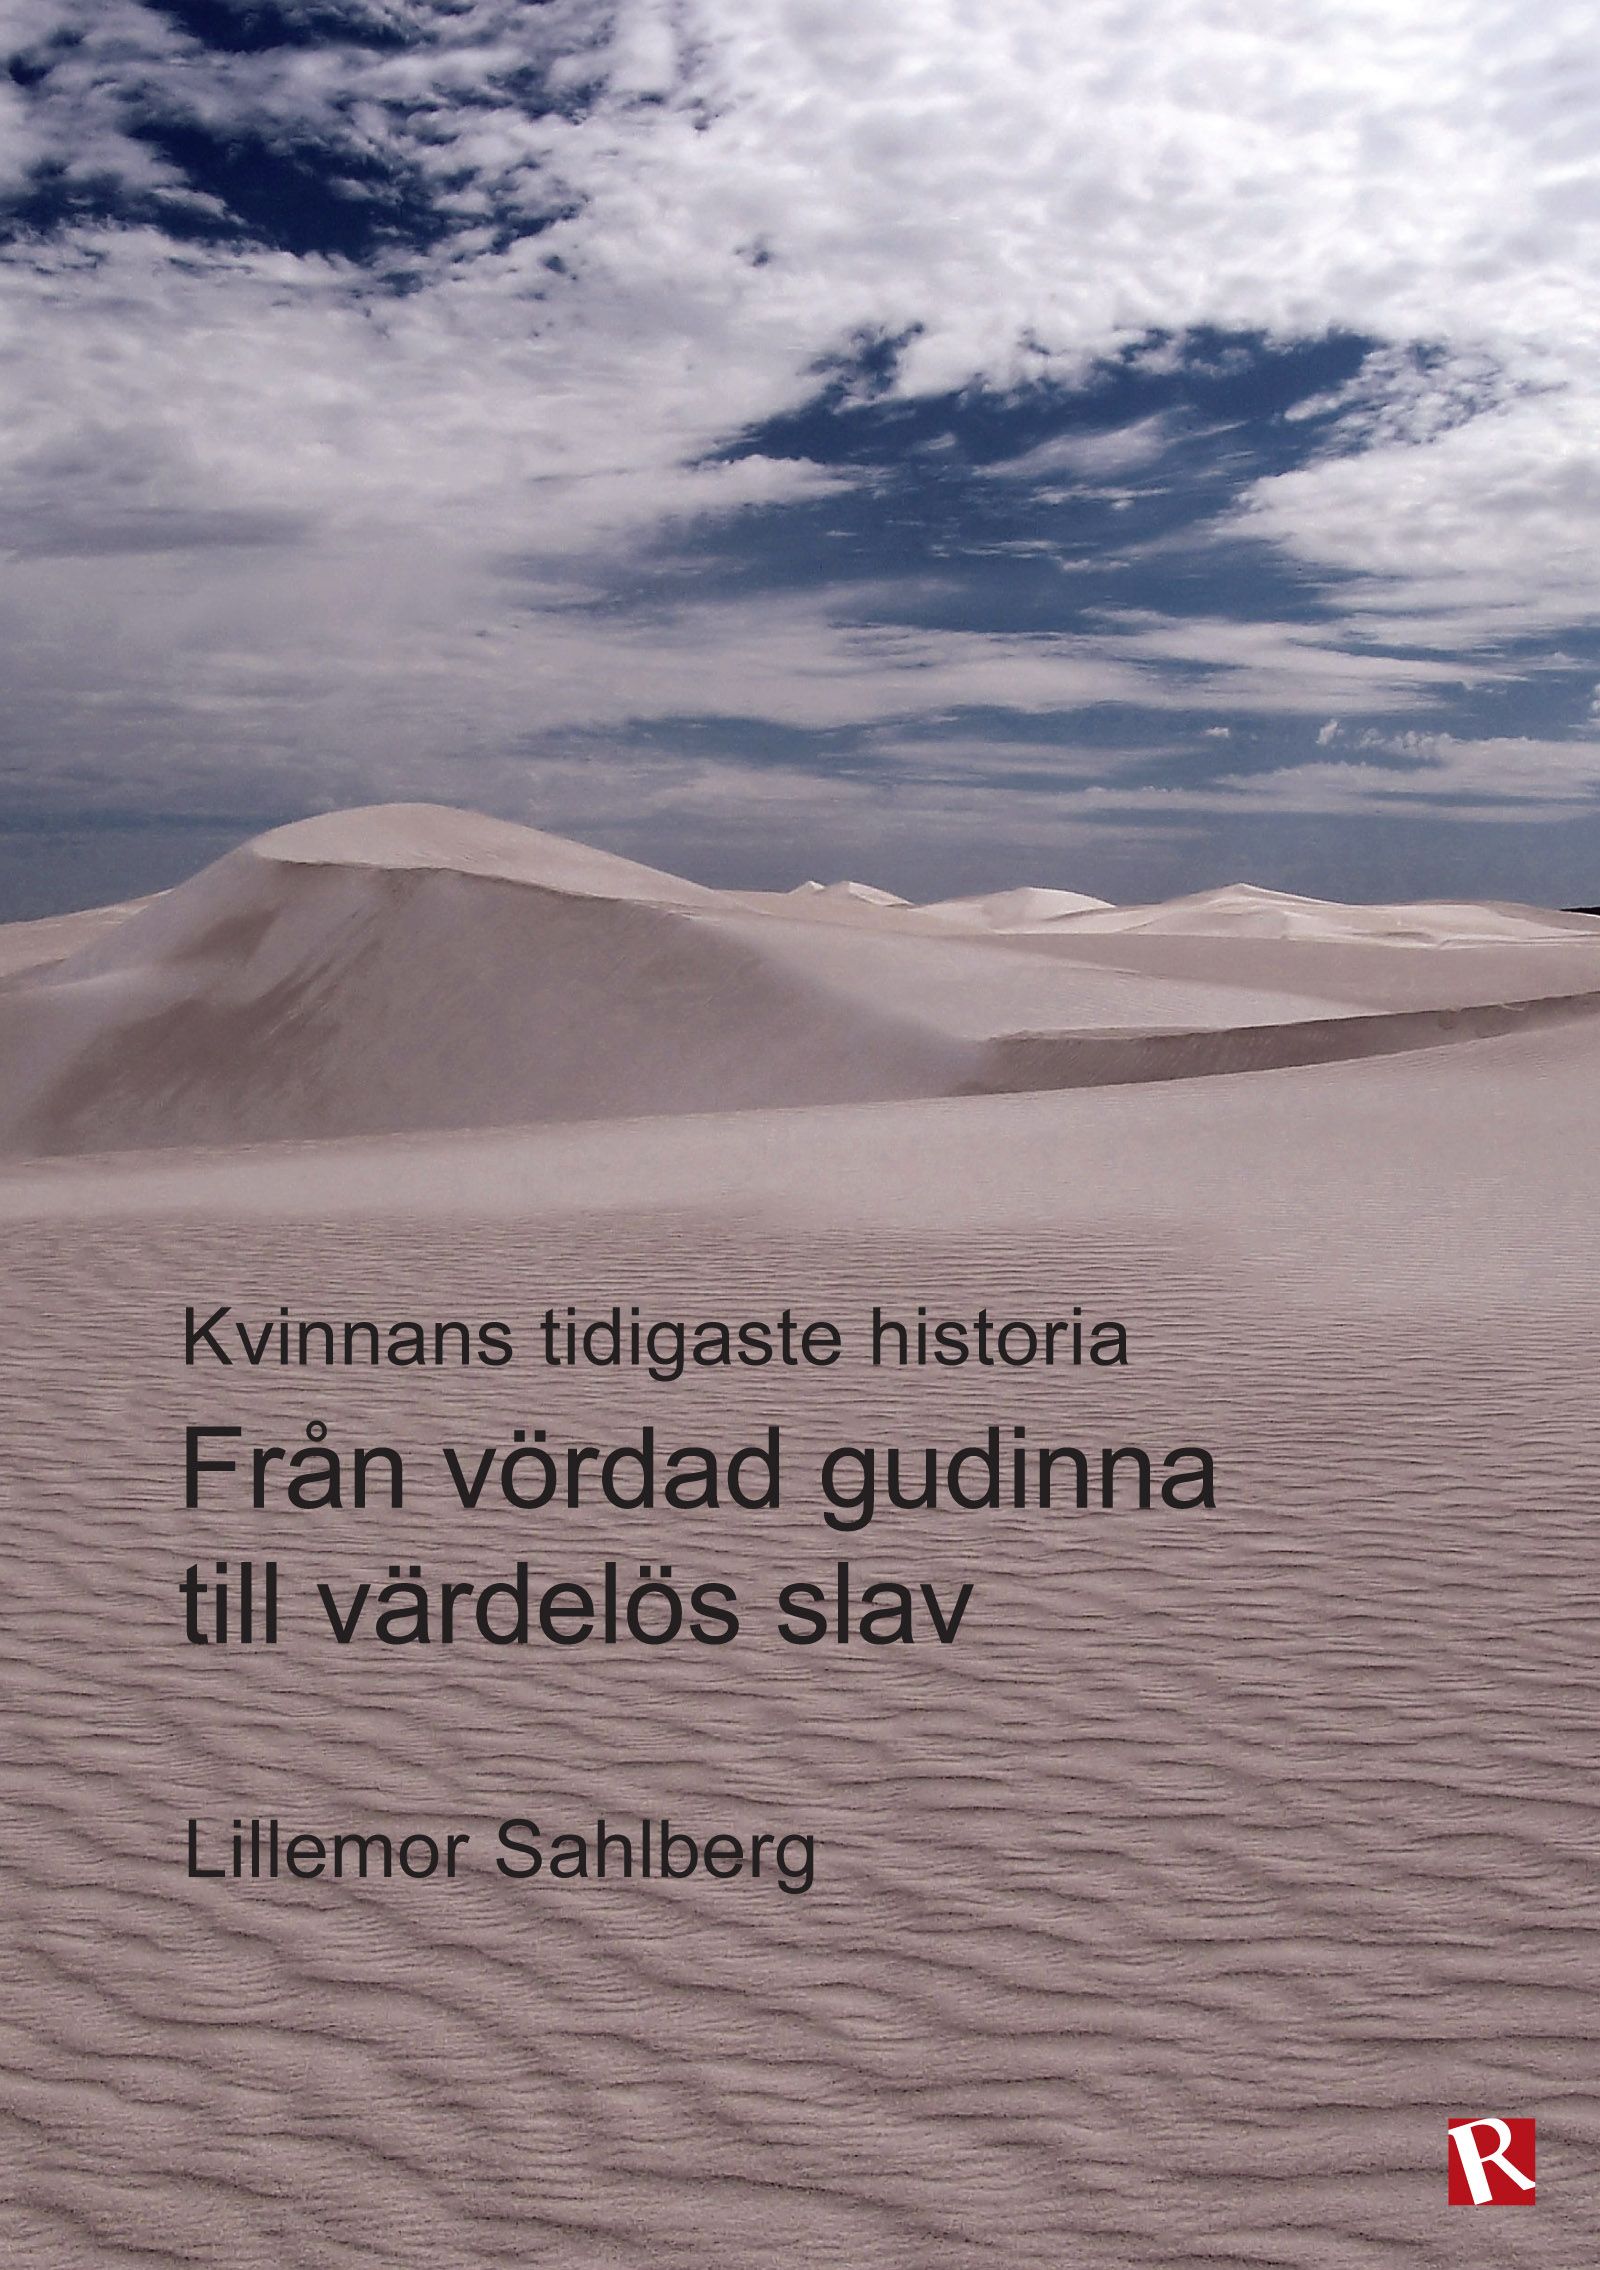 Från vördad gudinna till värdelös slav : Kvinnans tidigaste historia, e-bok av Lillemor Sahlberg